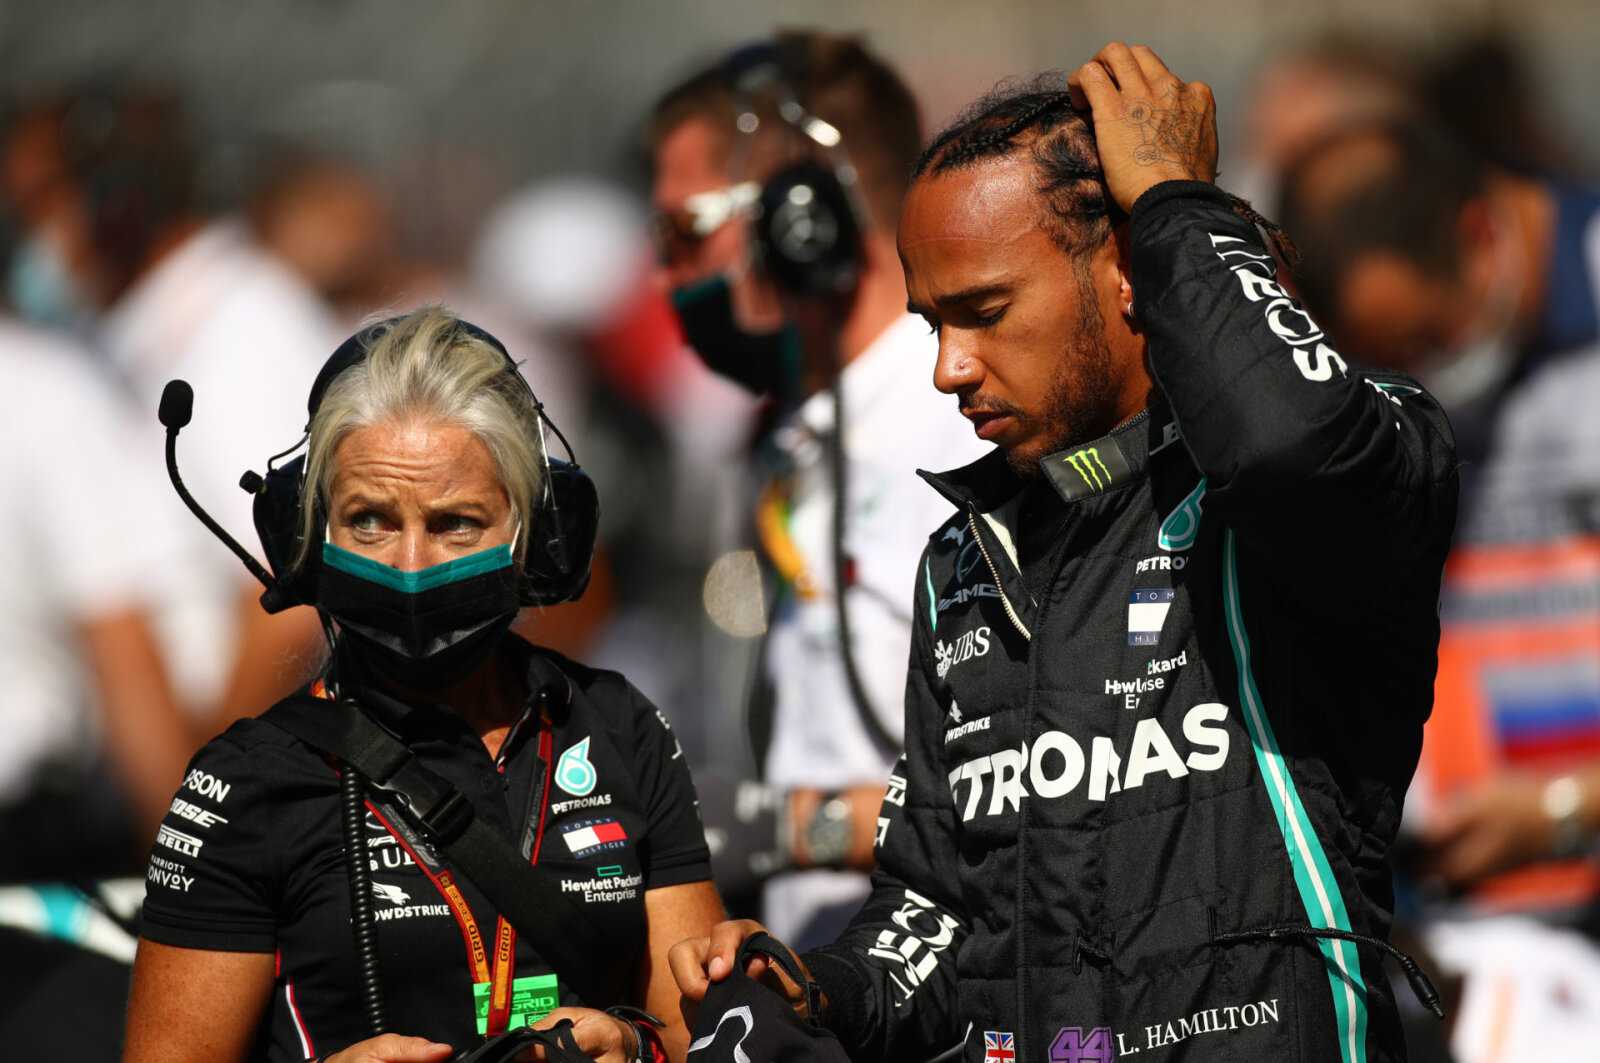 Le père de Max Verstappen, Jos, insinue la faute professionnelle de Lewis Hamilton avec l'aide de son entraîneur au Brésil